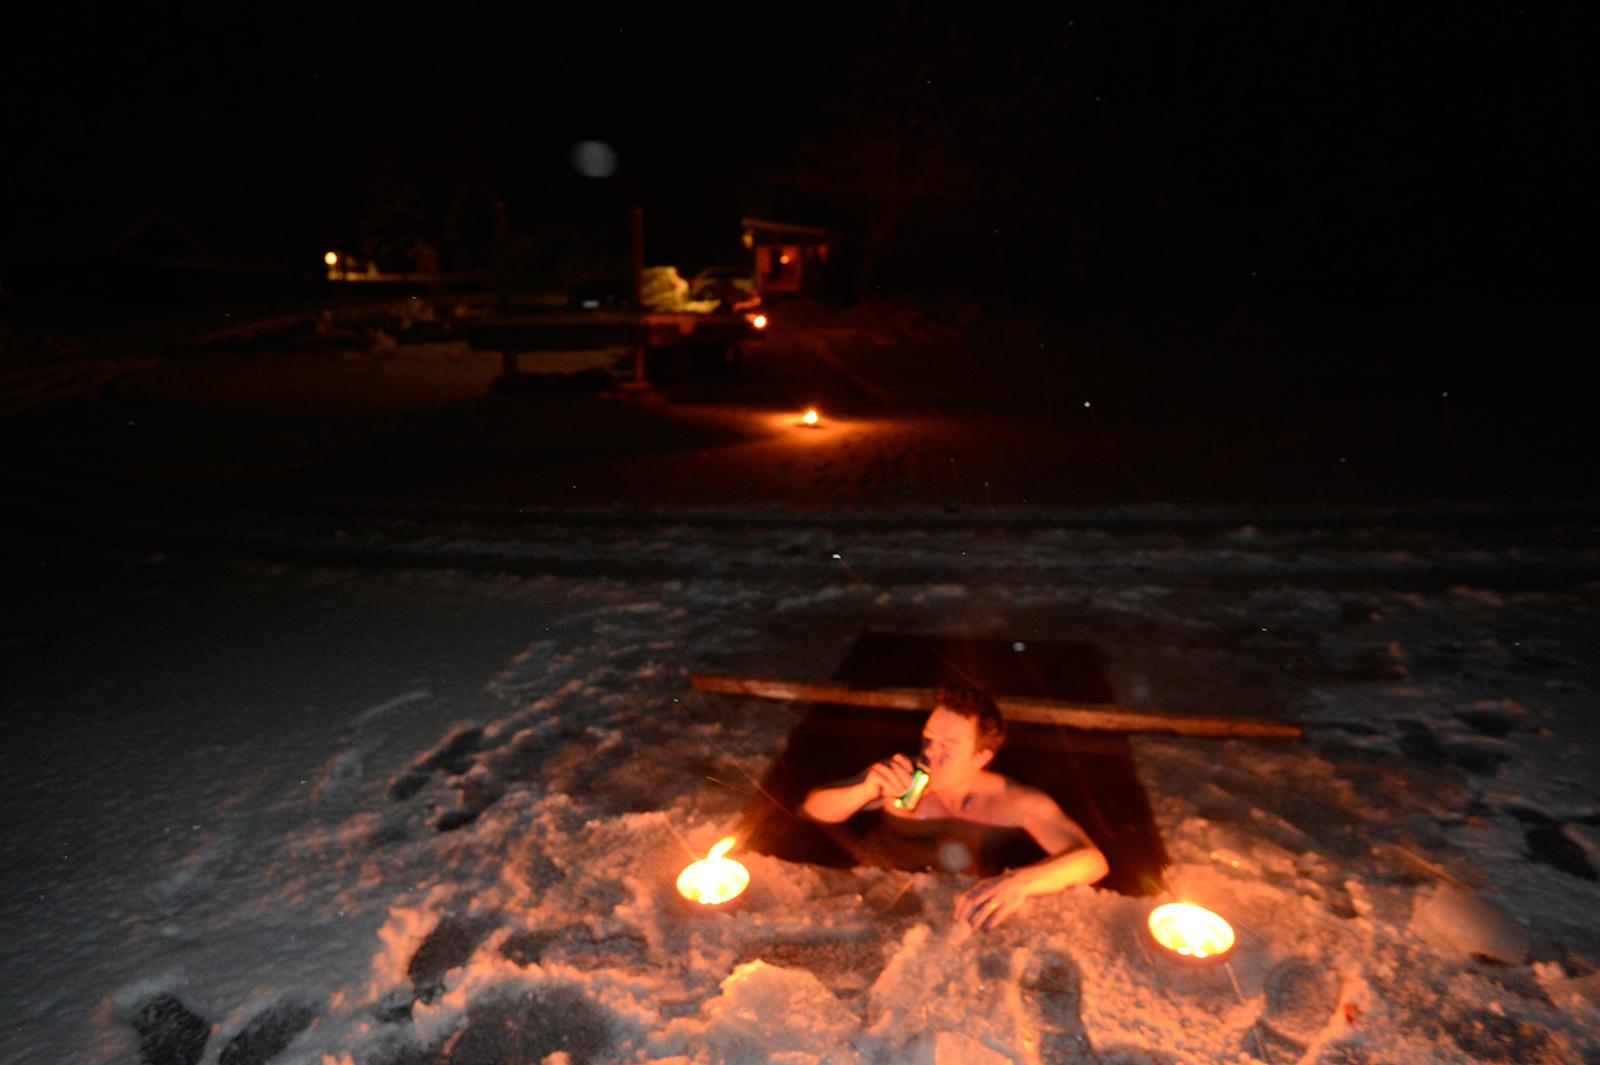 Johannes tar ett dopp i isvaken som mågen Simon sågat upp utanför bastun. Foto: LASSE ALLARD